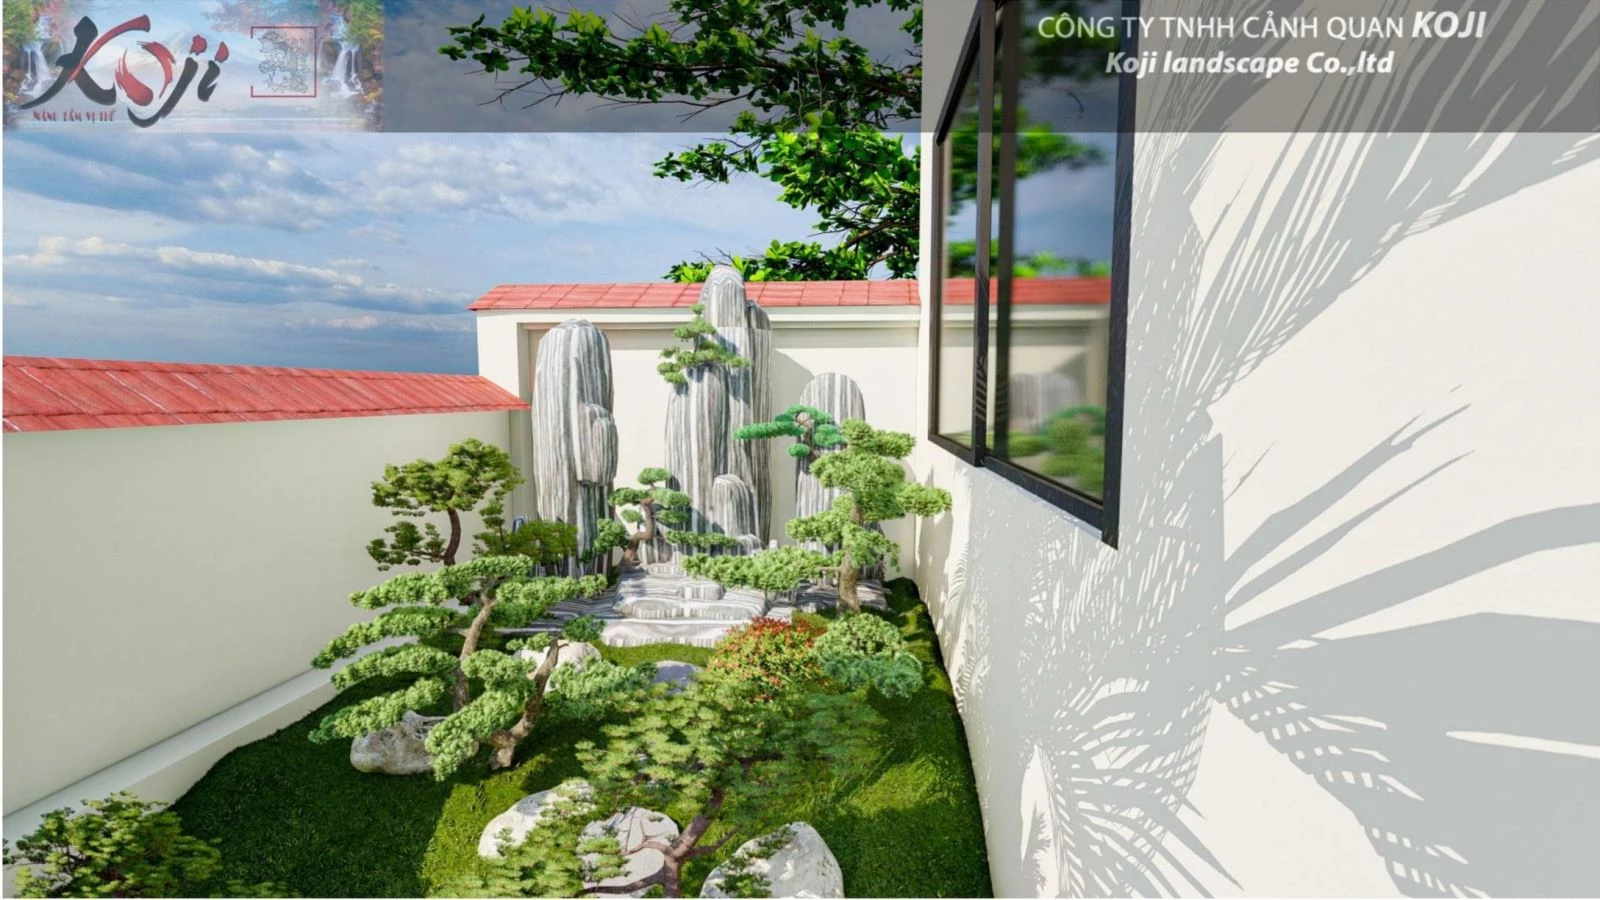 Gợi ý thiết kế sân vườn bên hông nhà tạo điểm nhấn ấn tượng